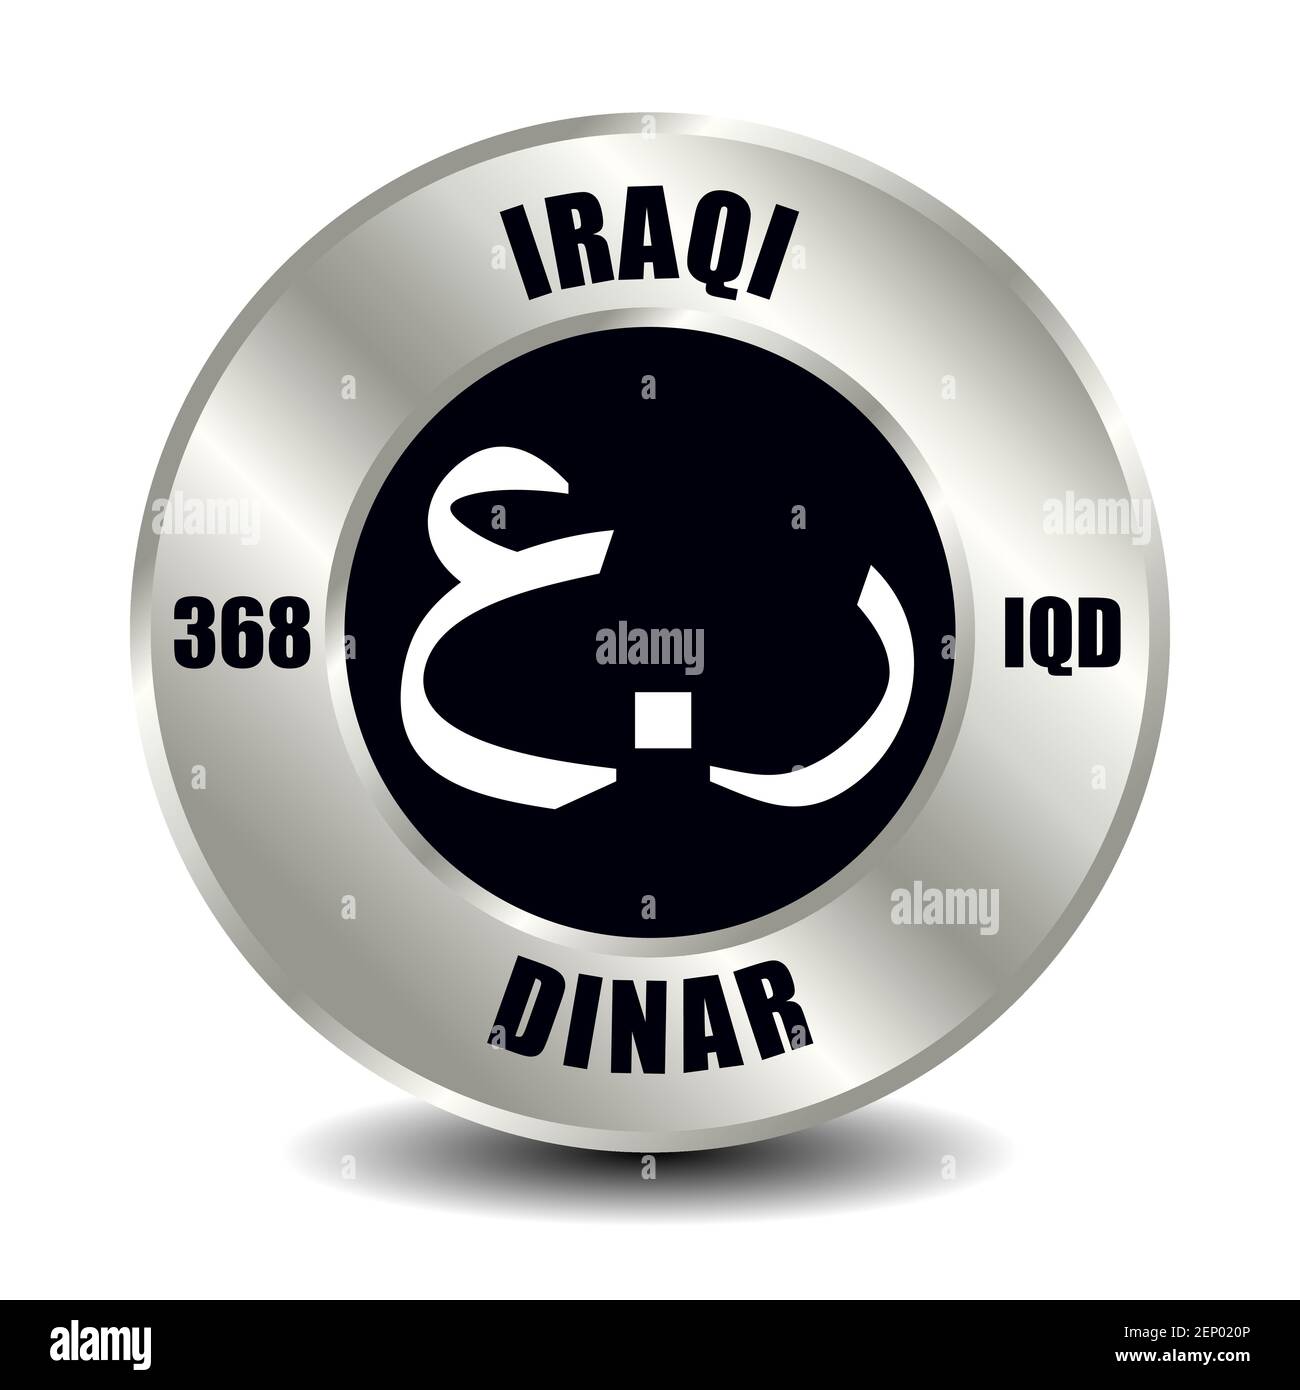 Icona del denaro dell'Iraq isolata su moneta d'argento rotonda. Simbolo vettoriale della valuta con codice ISO internazionale e abbreviazione Illustrazione Vettoriale